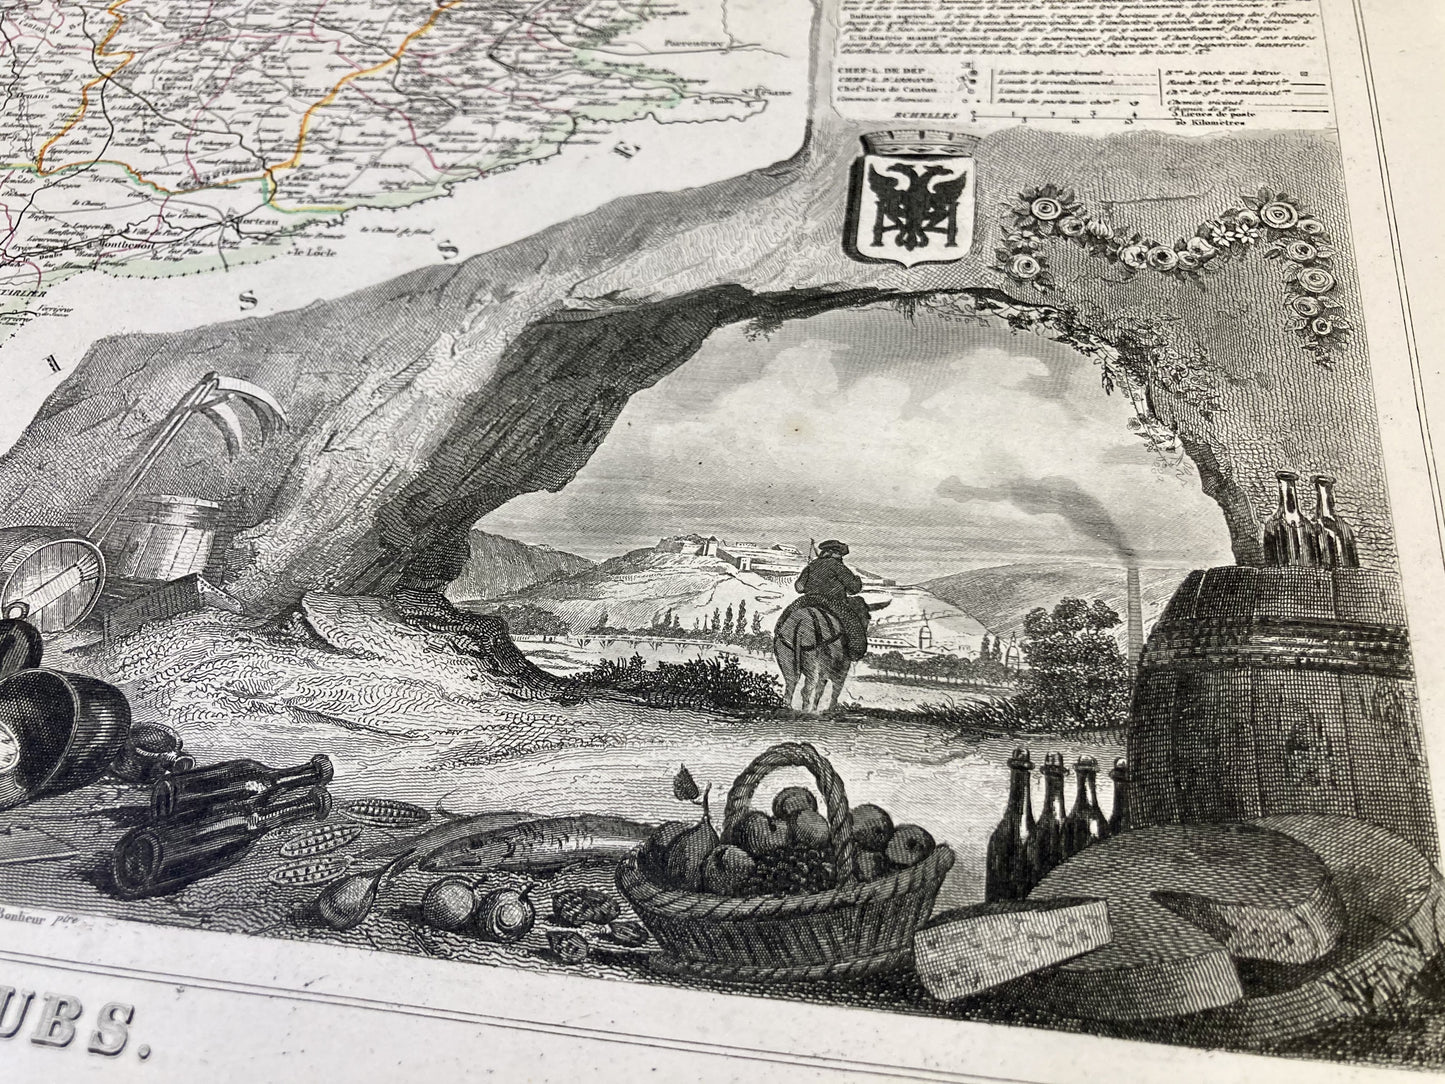 Détail de la carte ancienne illustrée du Doubs